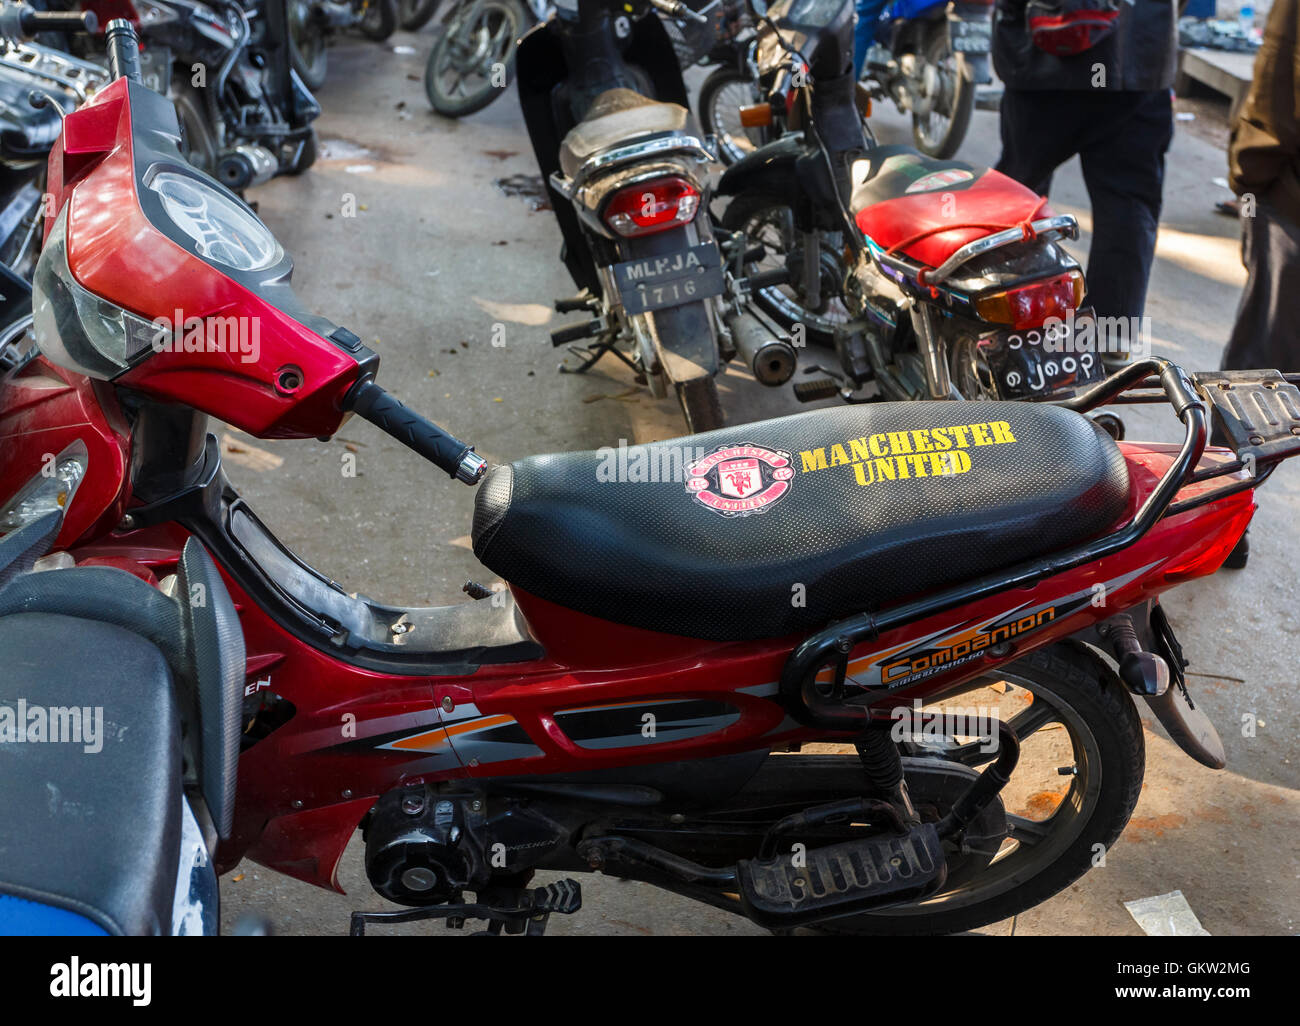 Manchester United crest aparcado en un asiento de motocicleta en el Mercado de Jade, Mandalay, Myanmar (Birmania) Foto de stock